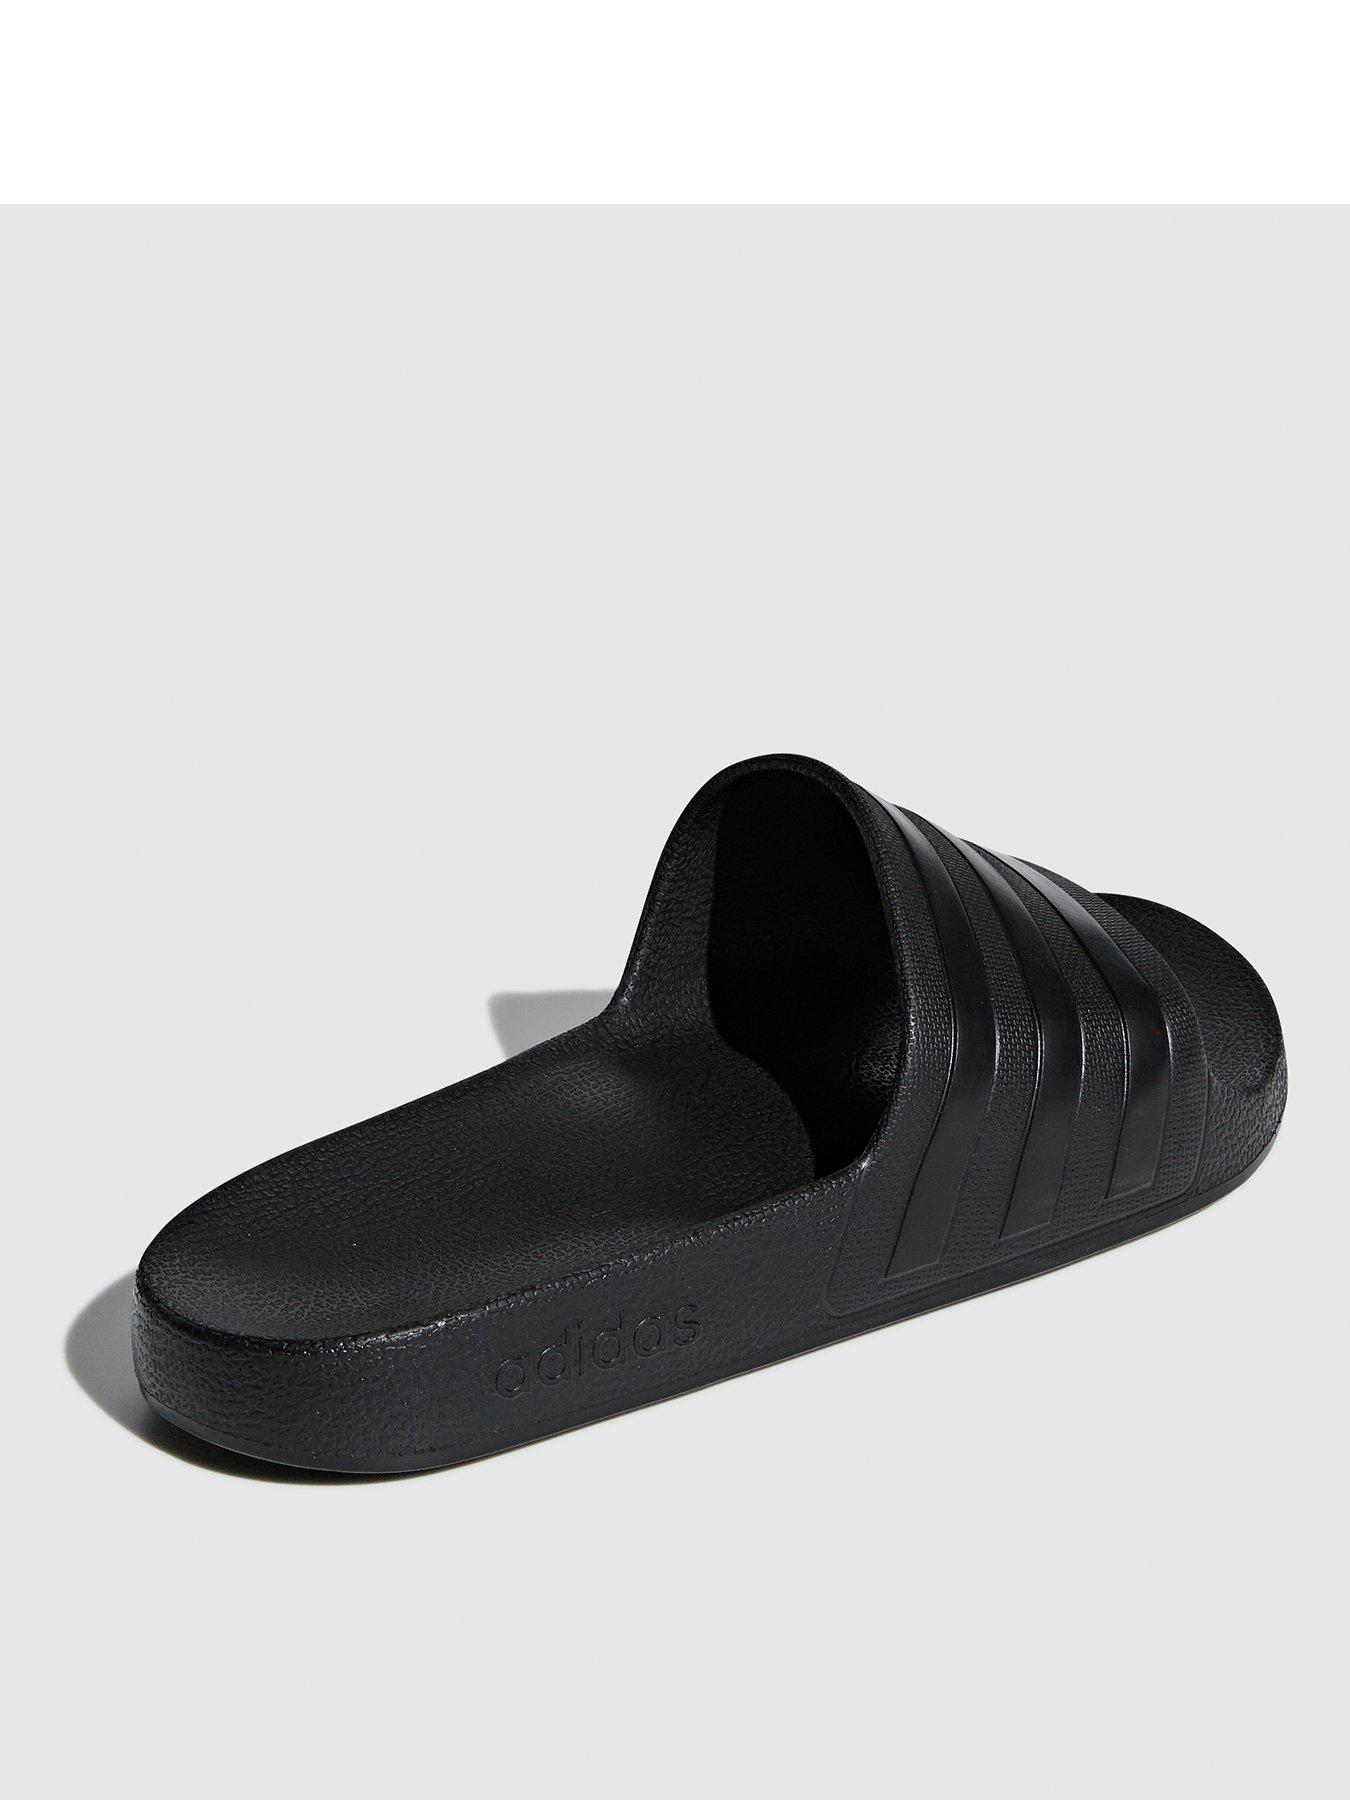 black slides adidas